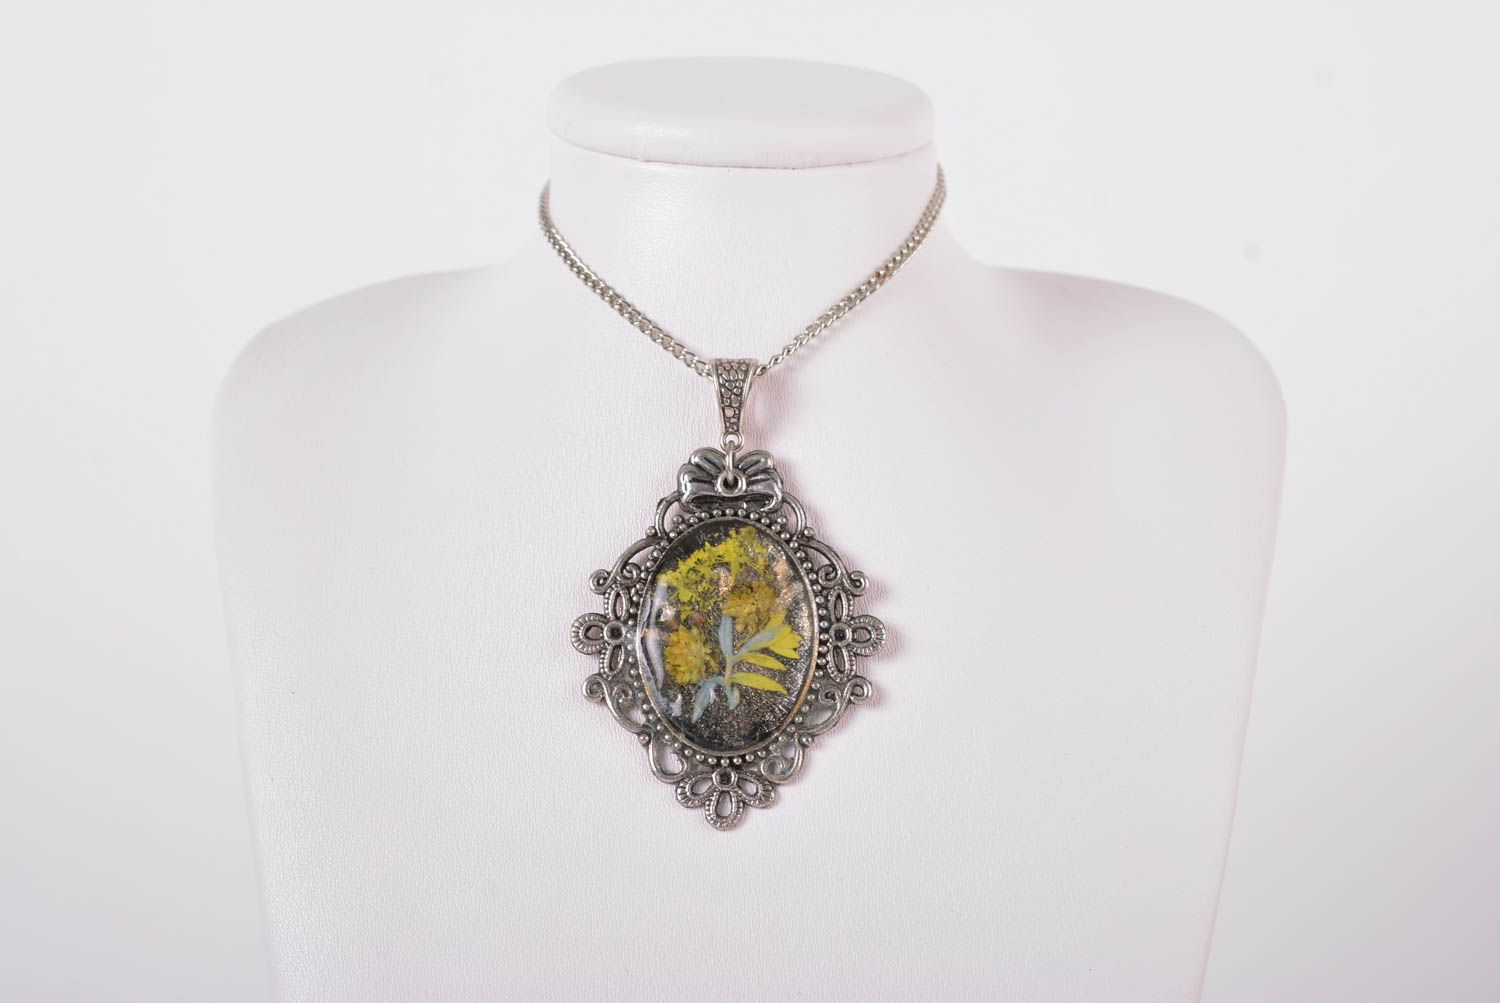 Stylish handmade neck pendant metal necklace design botanical jewelry ideas photo 2